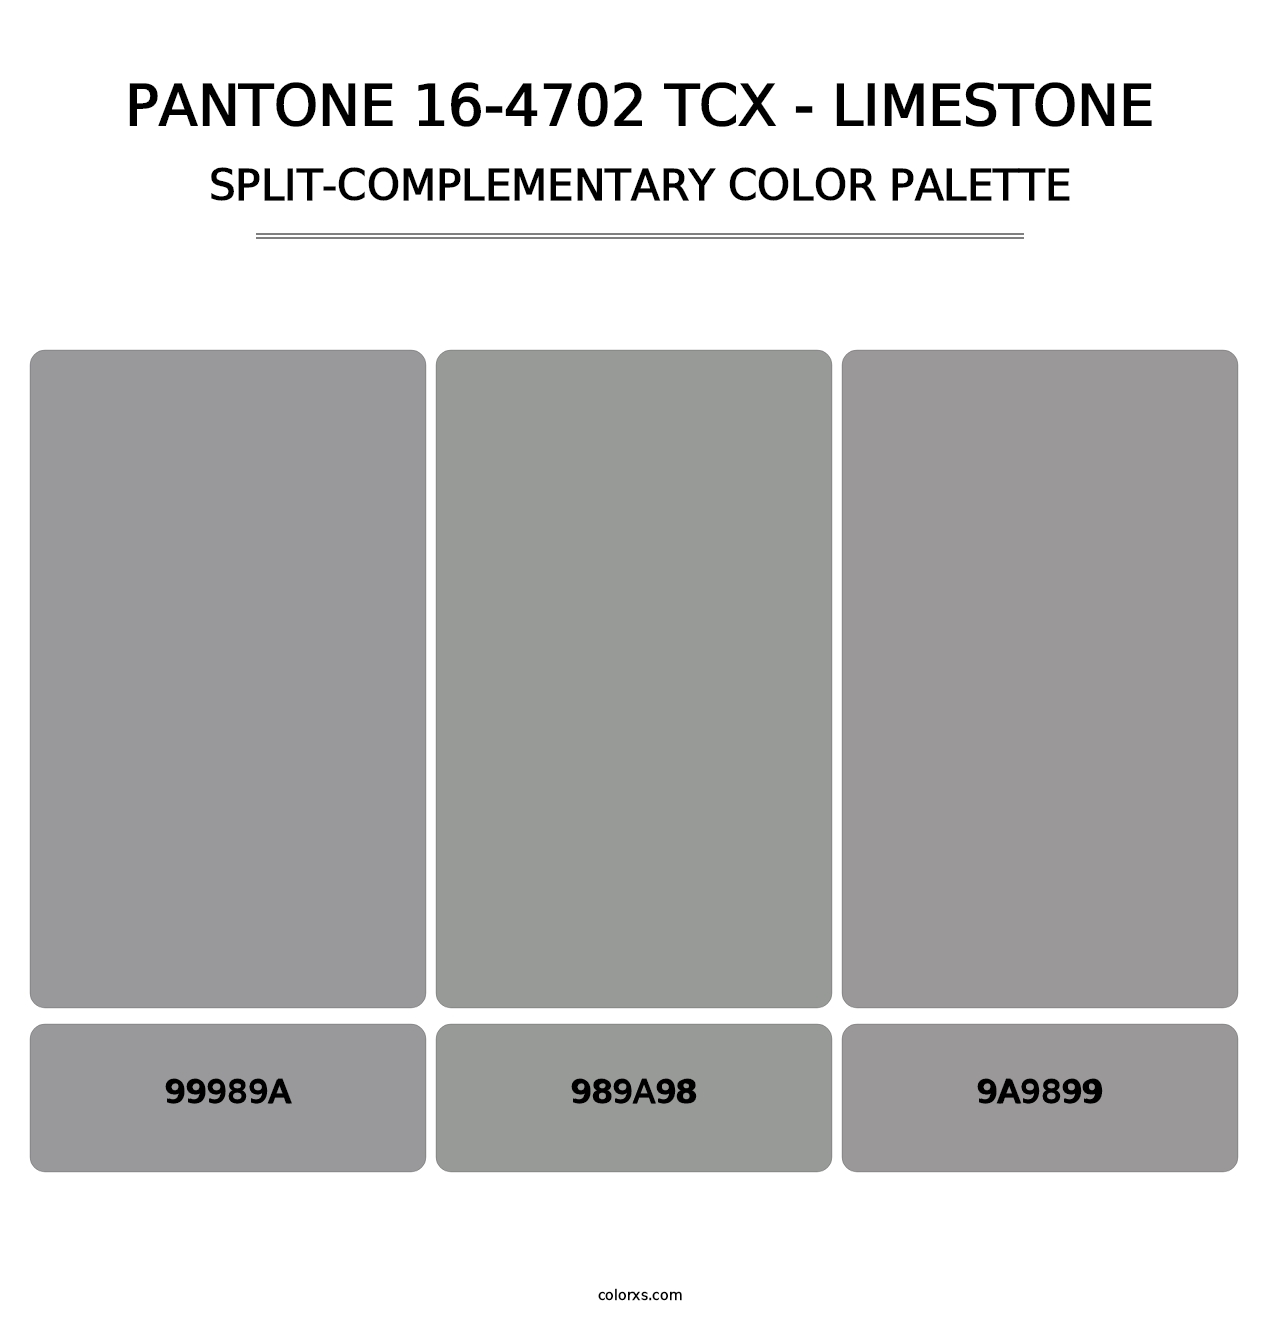 PANTONE 16-4702 TCX - Limestone - Split-Complementary Color Palette